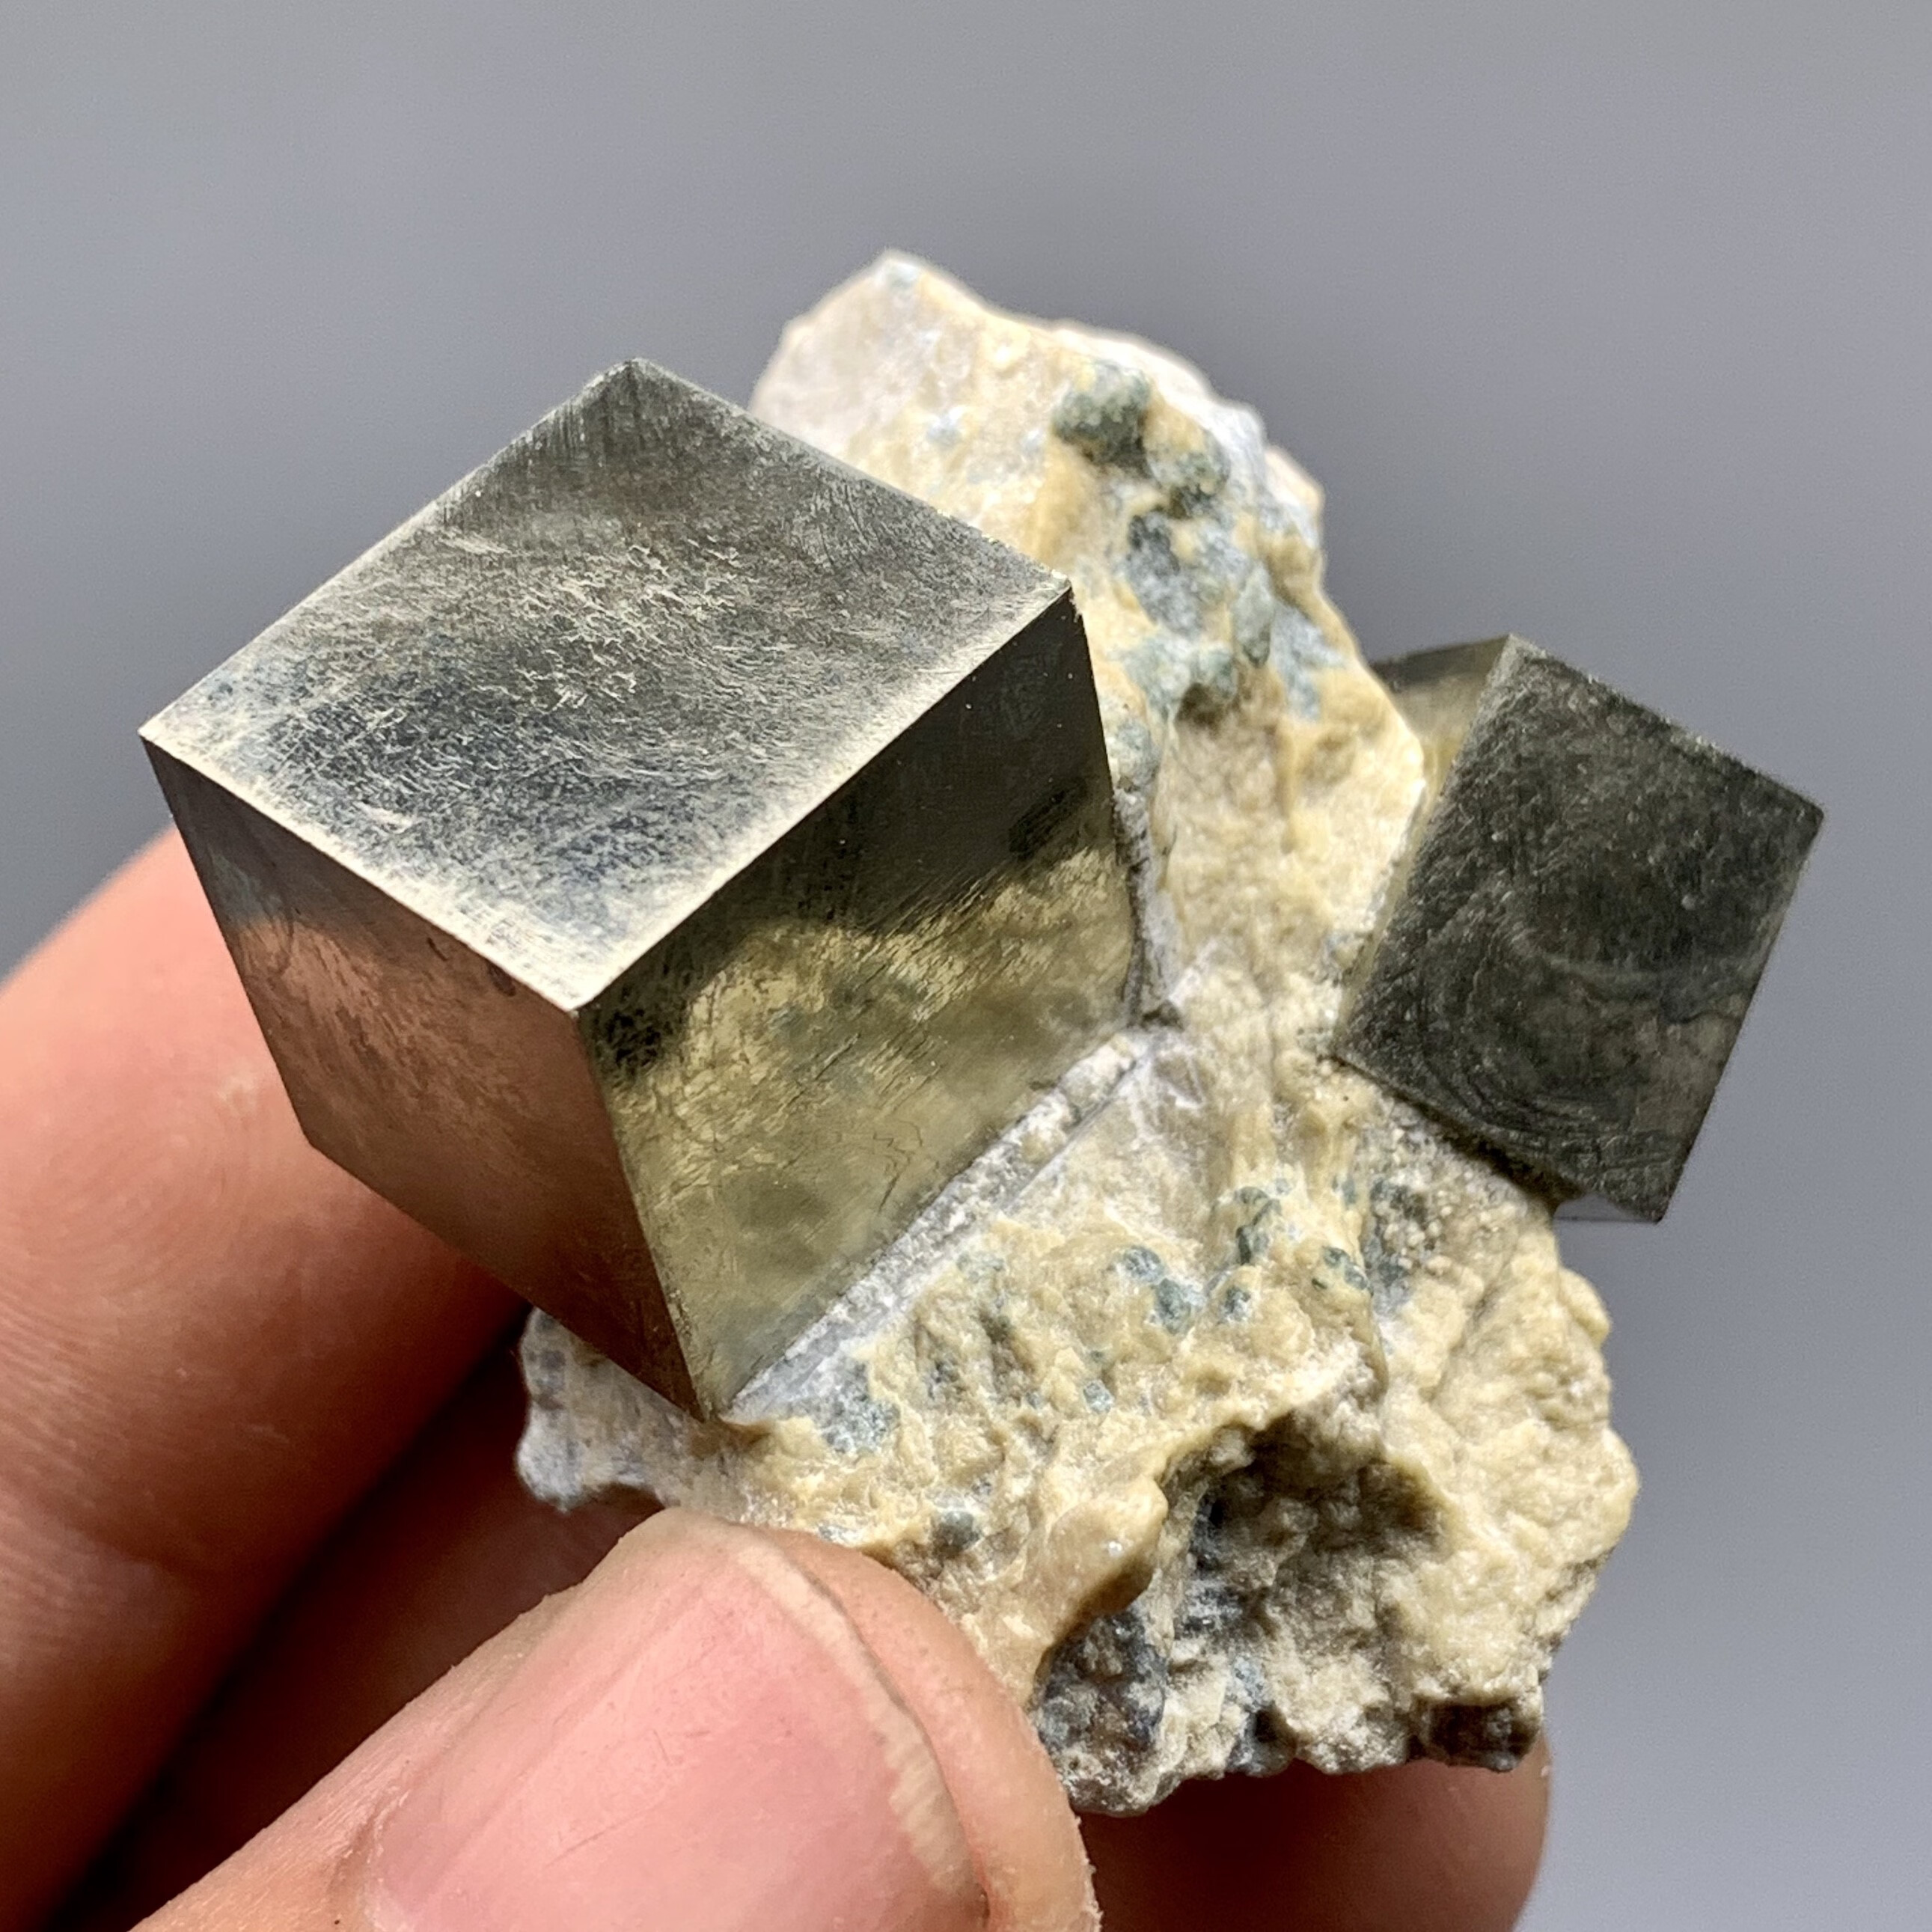 黄铁矿原石 西班牙黄铁矿立方体矿物晶体 教学标本矿石原石收藏石头